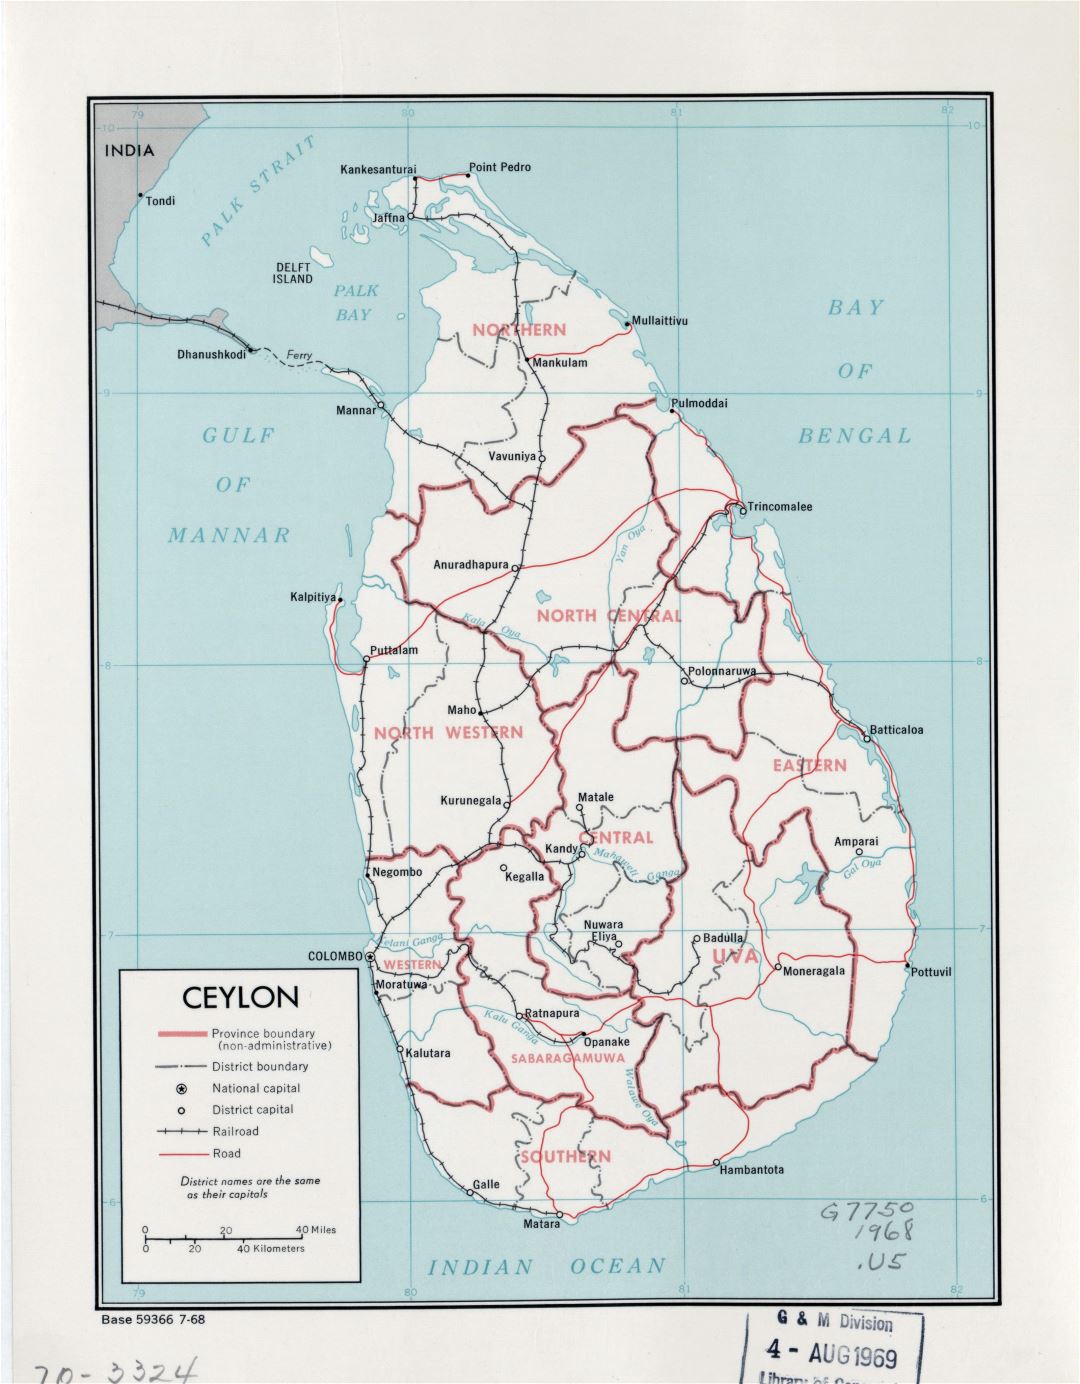 Grande detallado mapa político y administrativo de Sri Lanka (Ceilán) con carreteras, ferrocarriles y principales ciudades - 1968